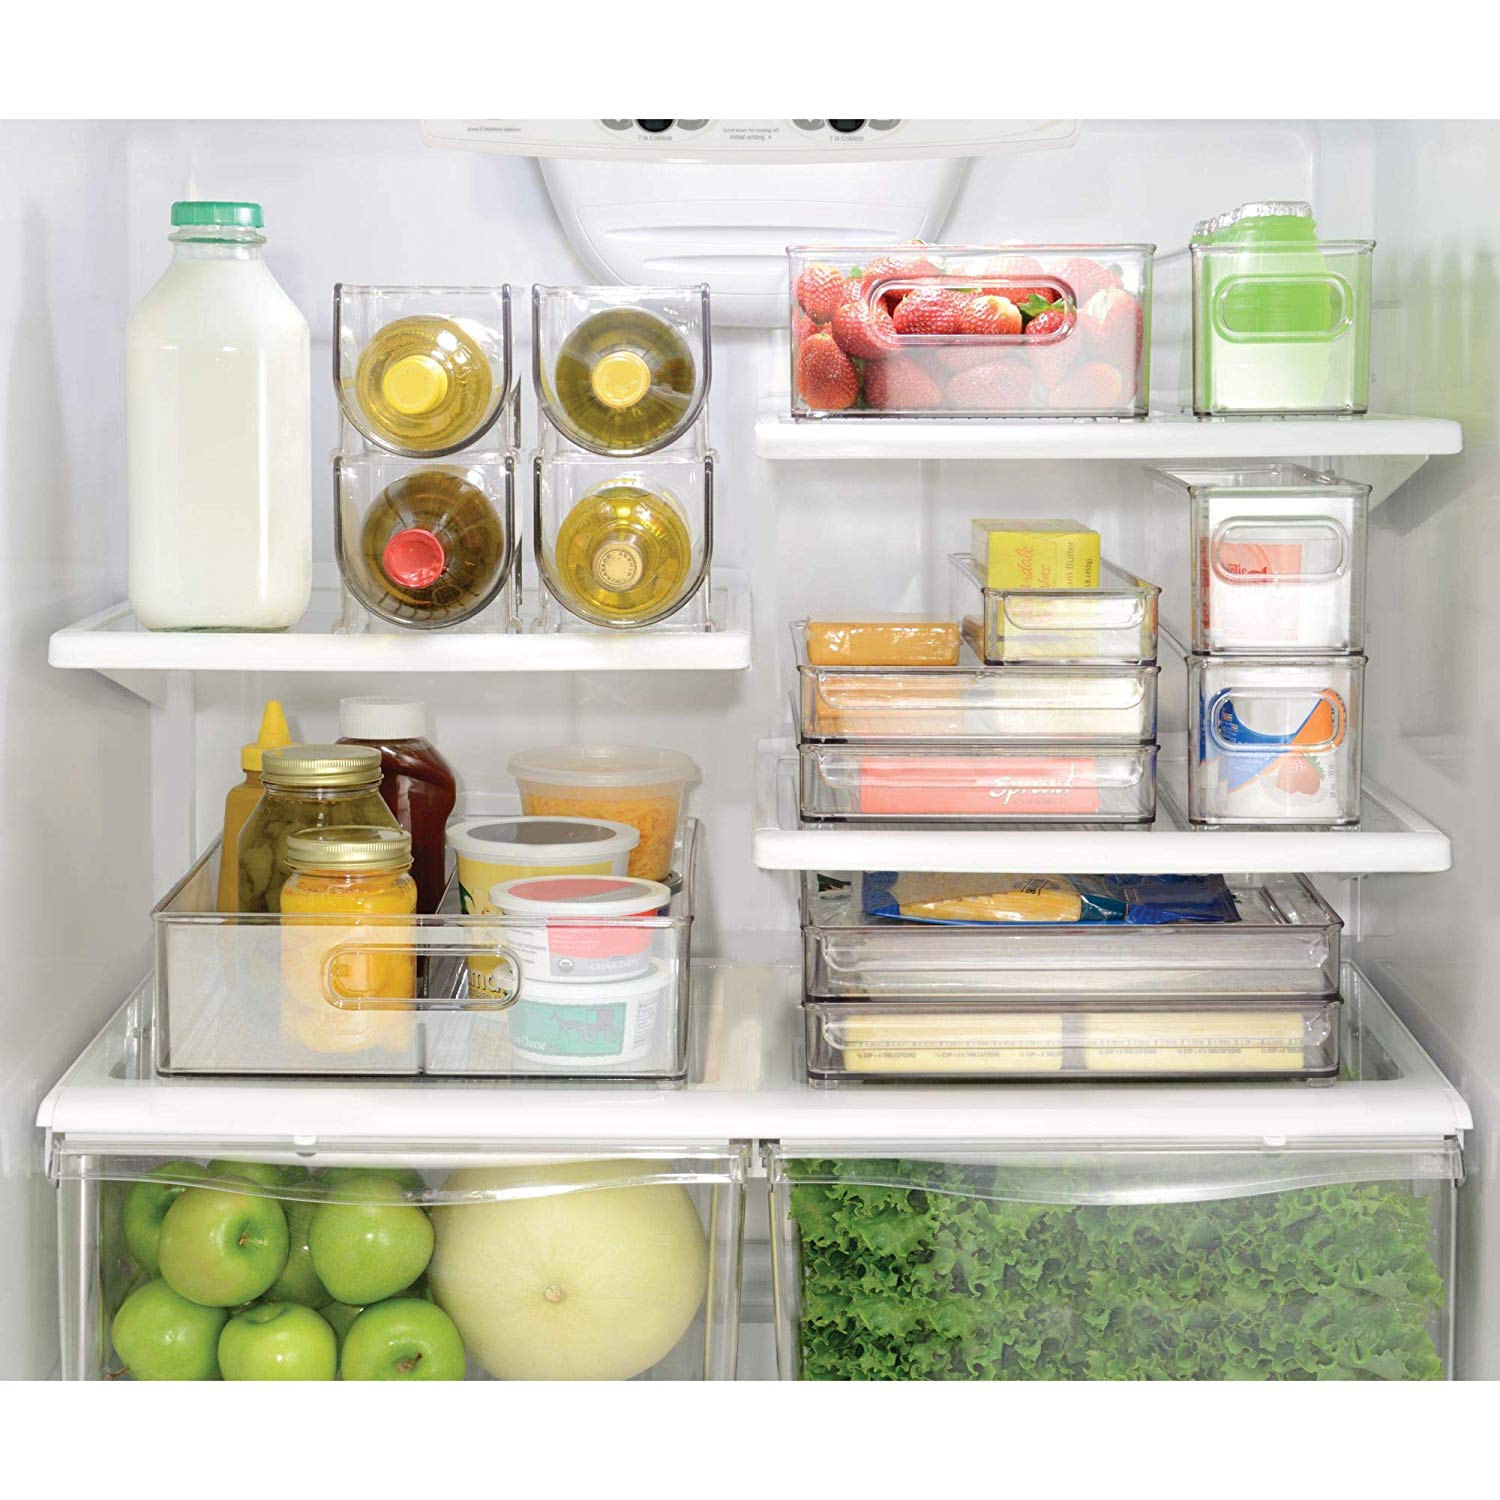 Organizador de frigorífico, los mejores accesorios para ordenar la